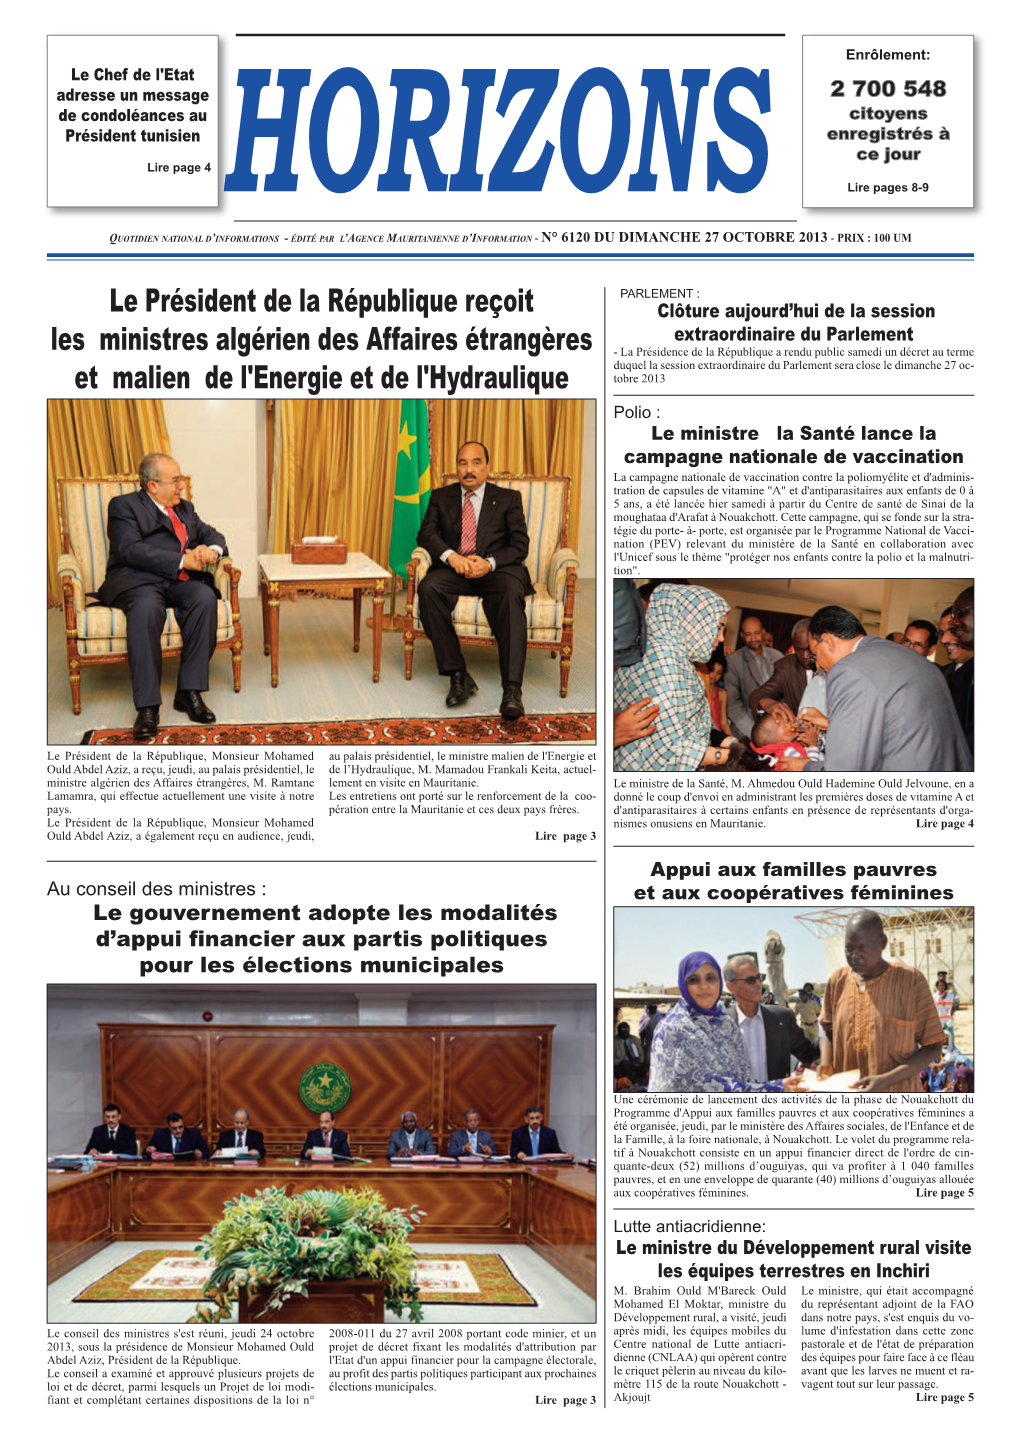 Le Président De La République Reçoit Les Ministres Algérien Des Affaires